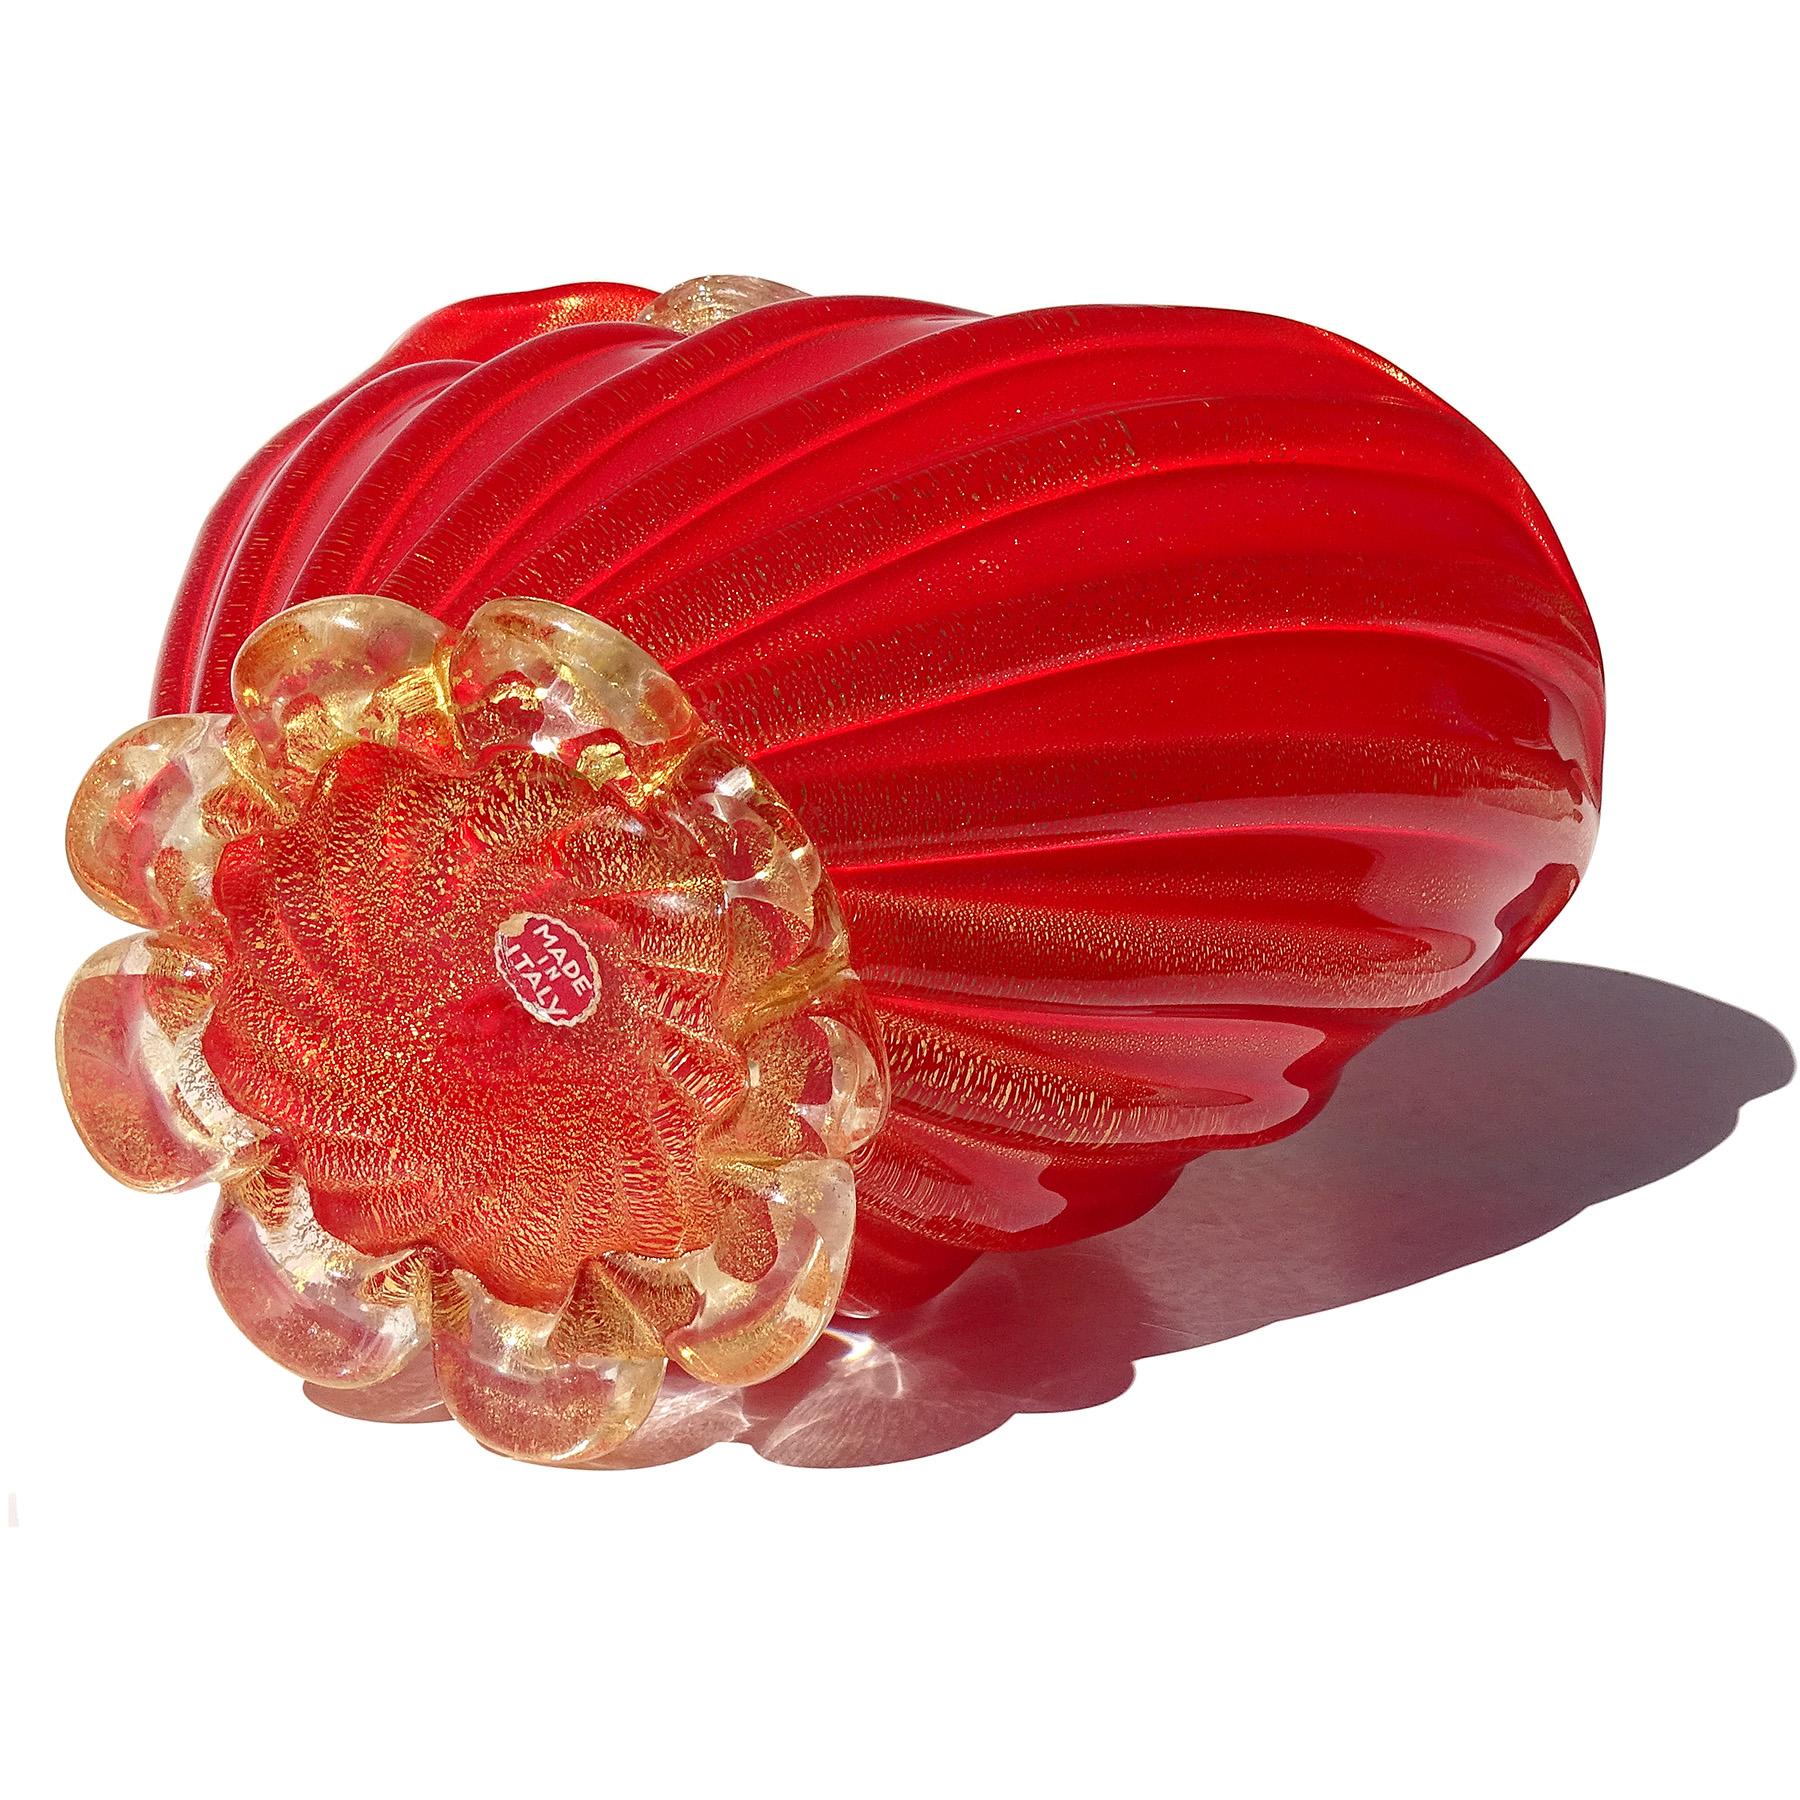 Seguso Murano 1950s Coral Red Gold Flecks Italian Art Glass Flower Basket Vase For Sale 7